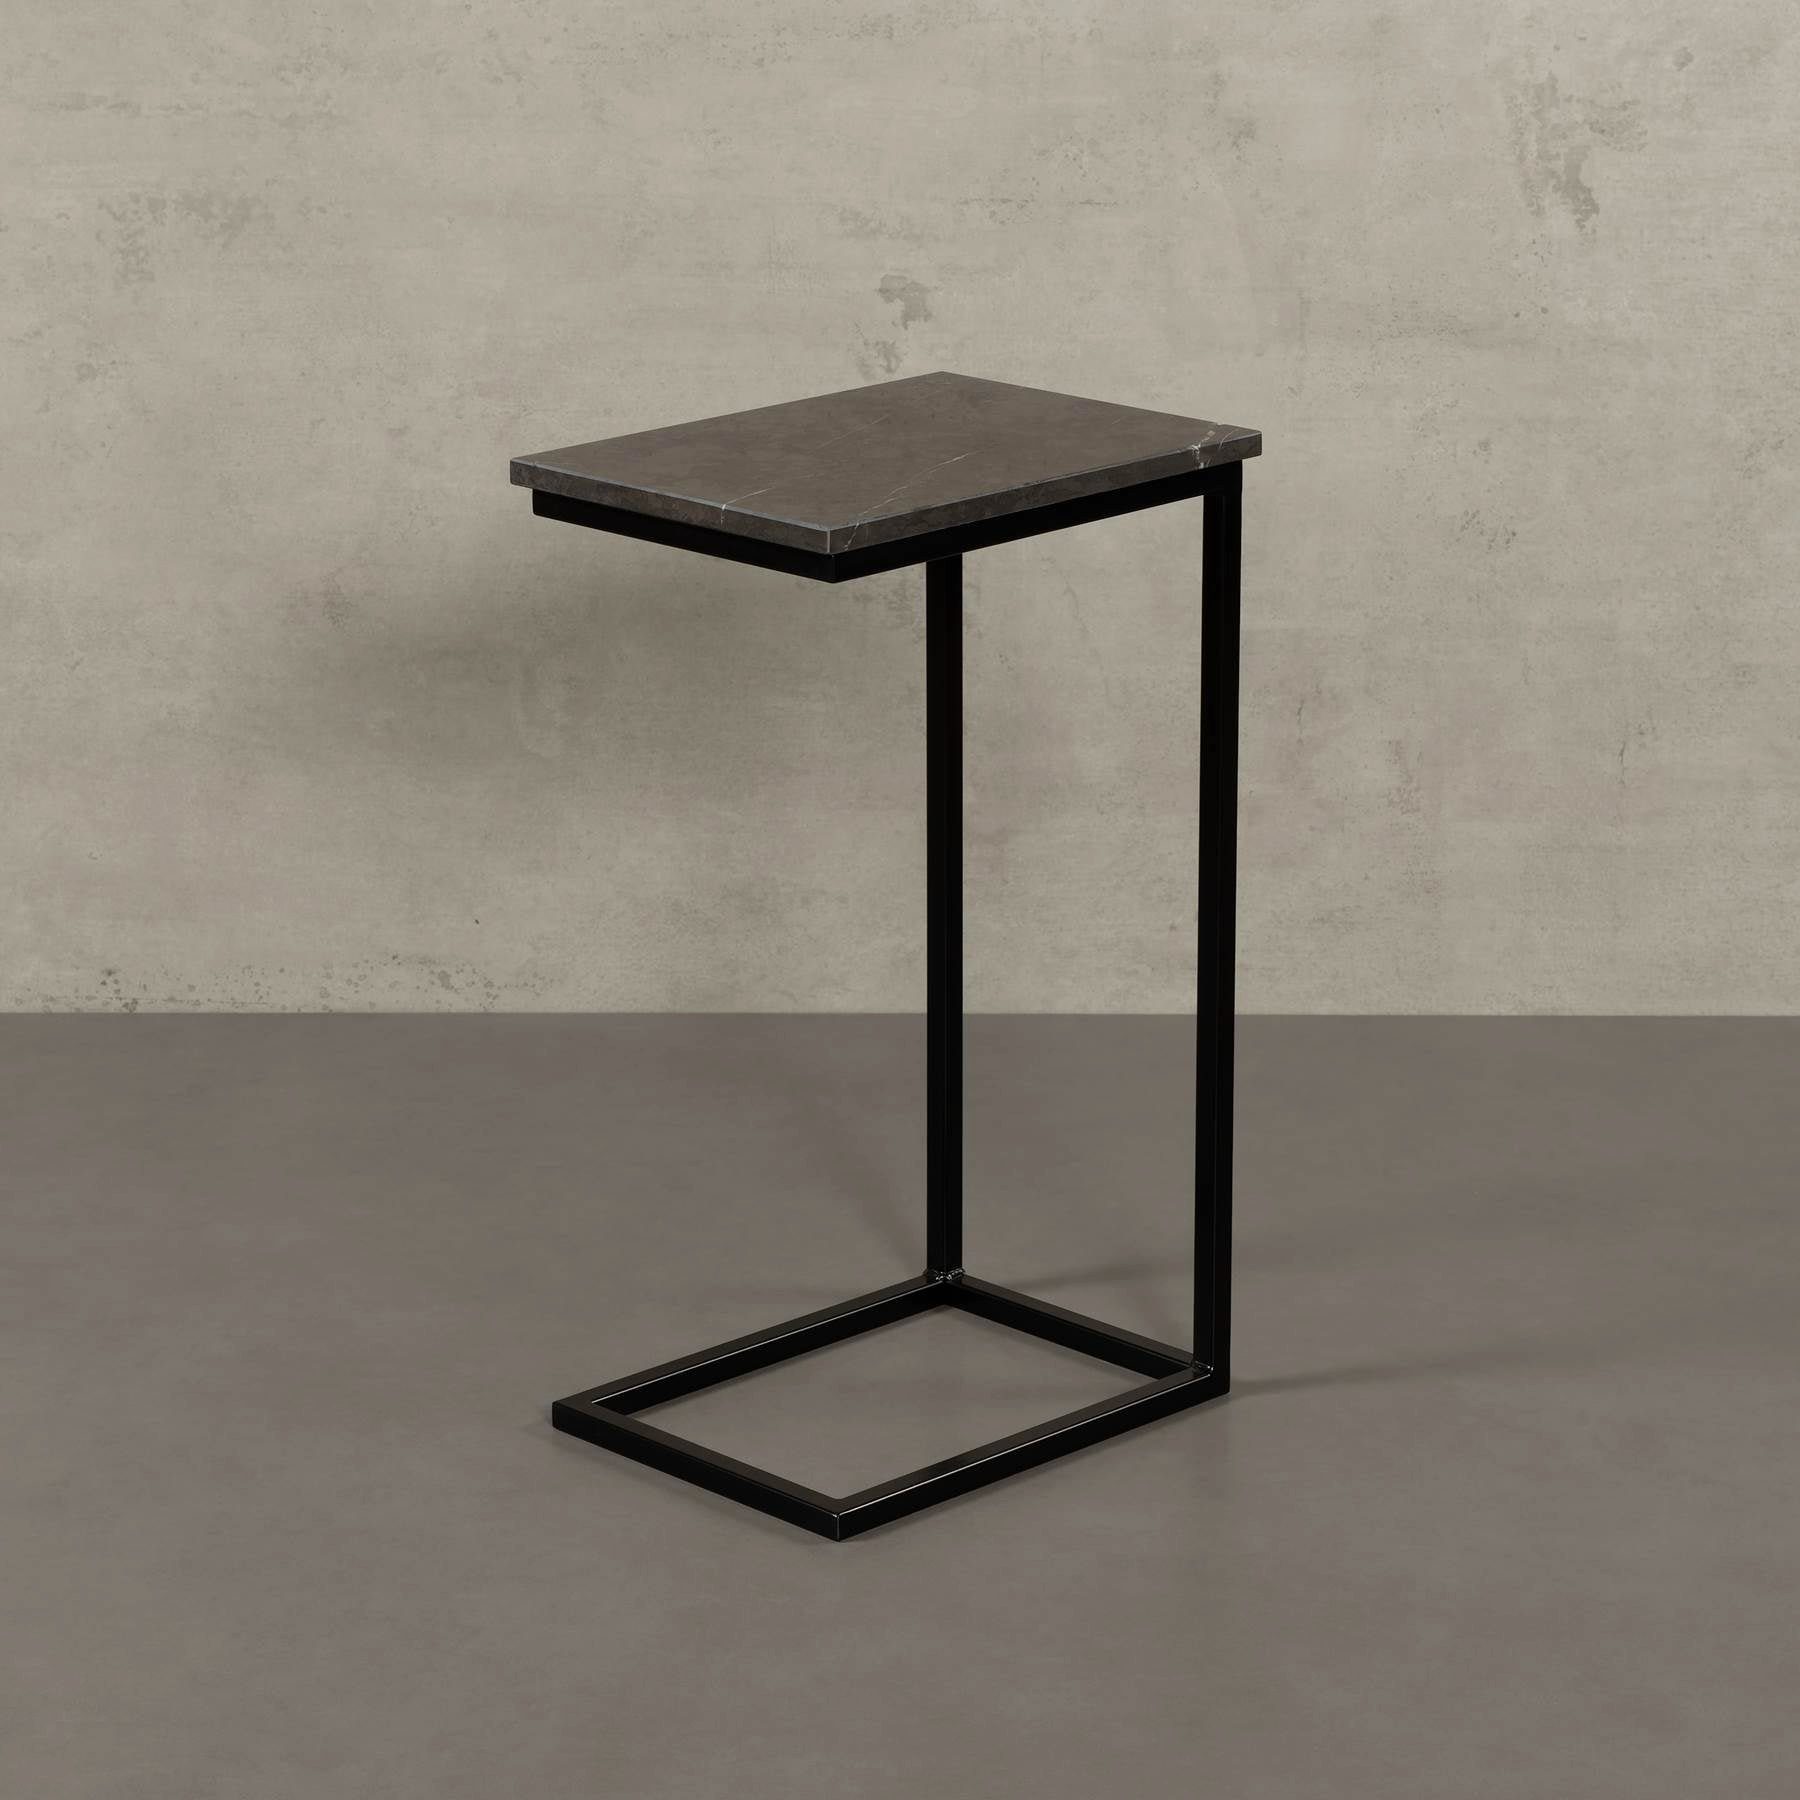 MAGNA Atelier Couchtisch STOCKHOLM mit ECHTEM MARMOR, Wohnzimmer Tisch eckig, Laptoptisch, schwarz Metallgestell, 40x30x68cm Grigio Marquina